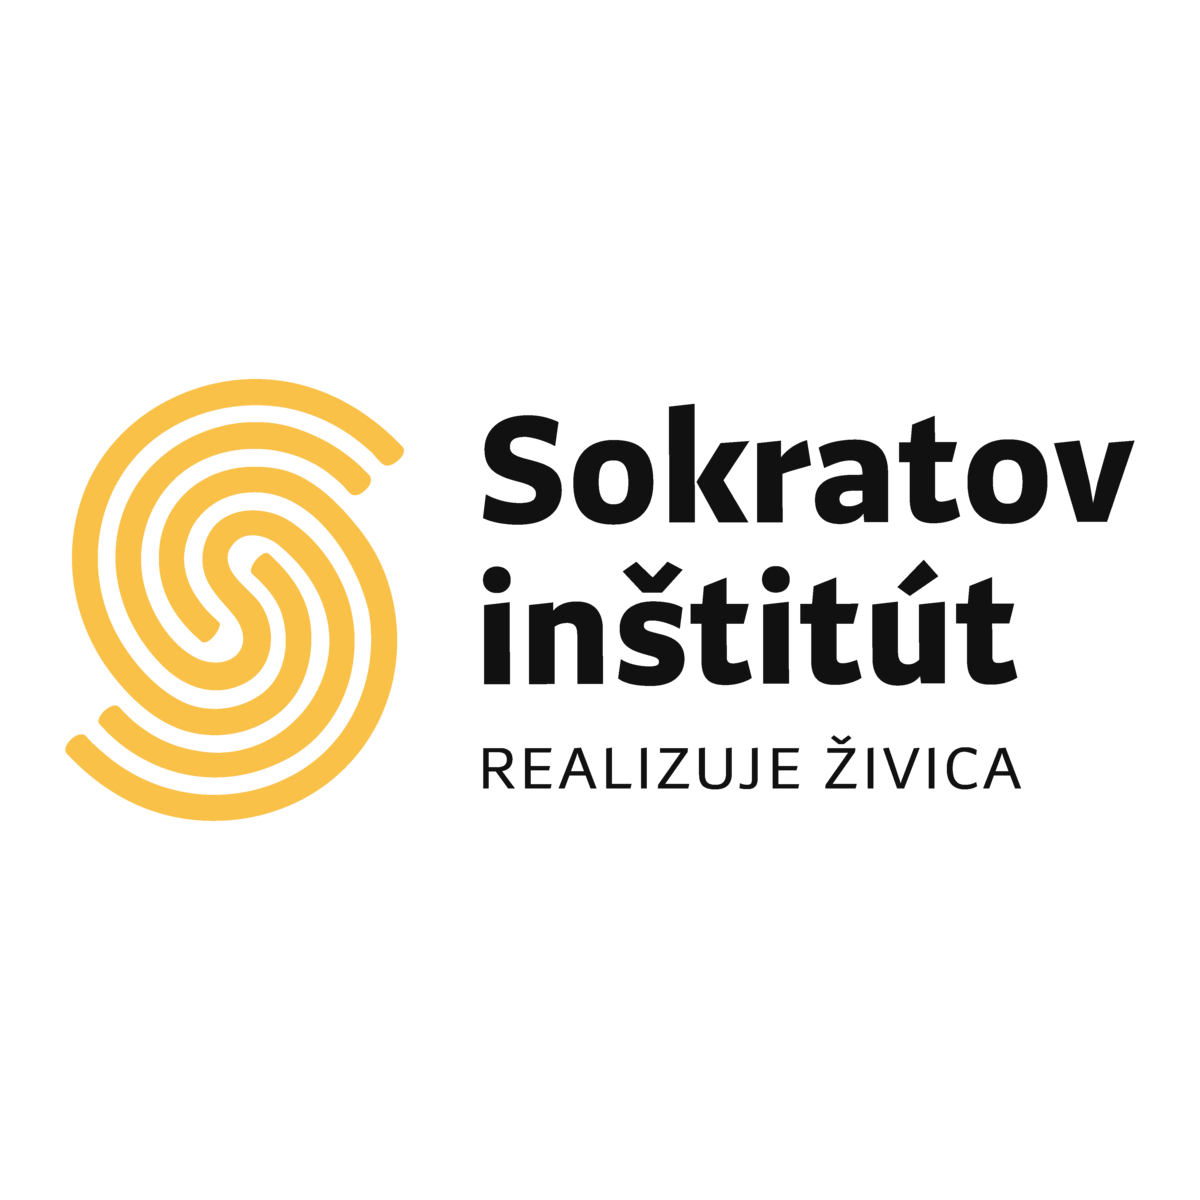 Sokratov inštitút logo